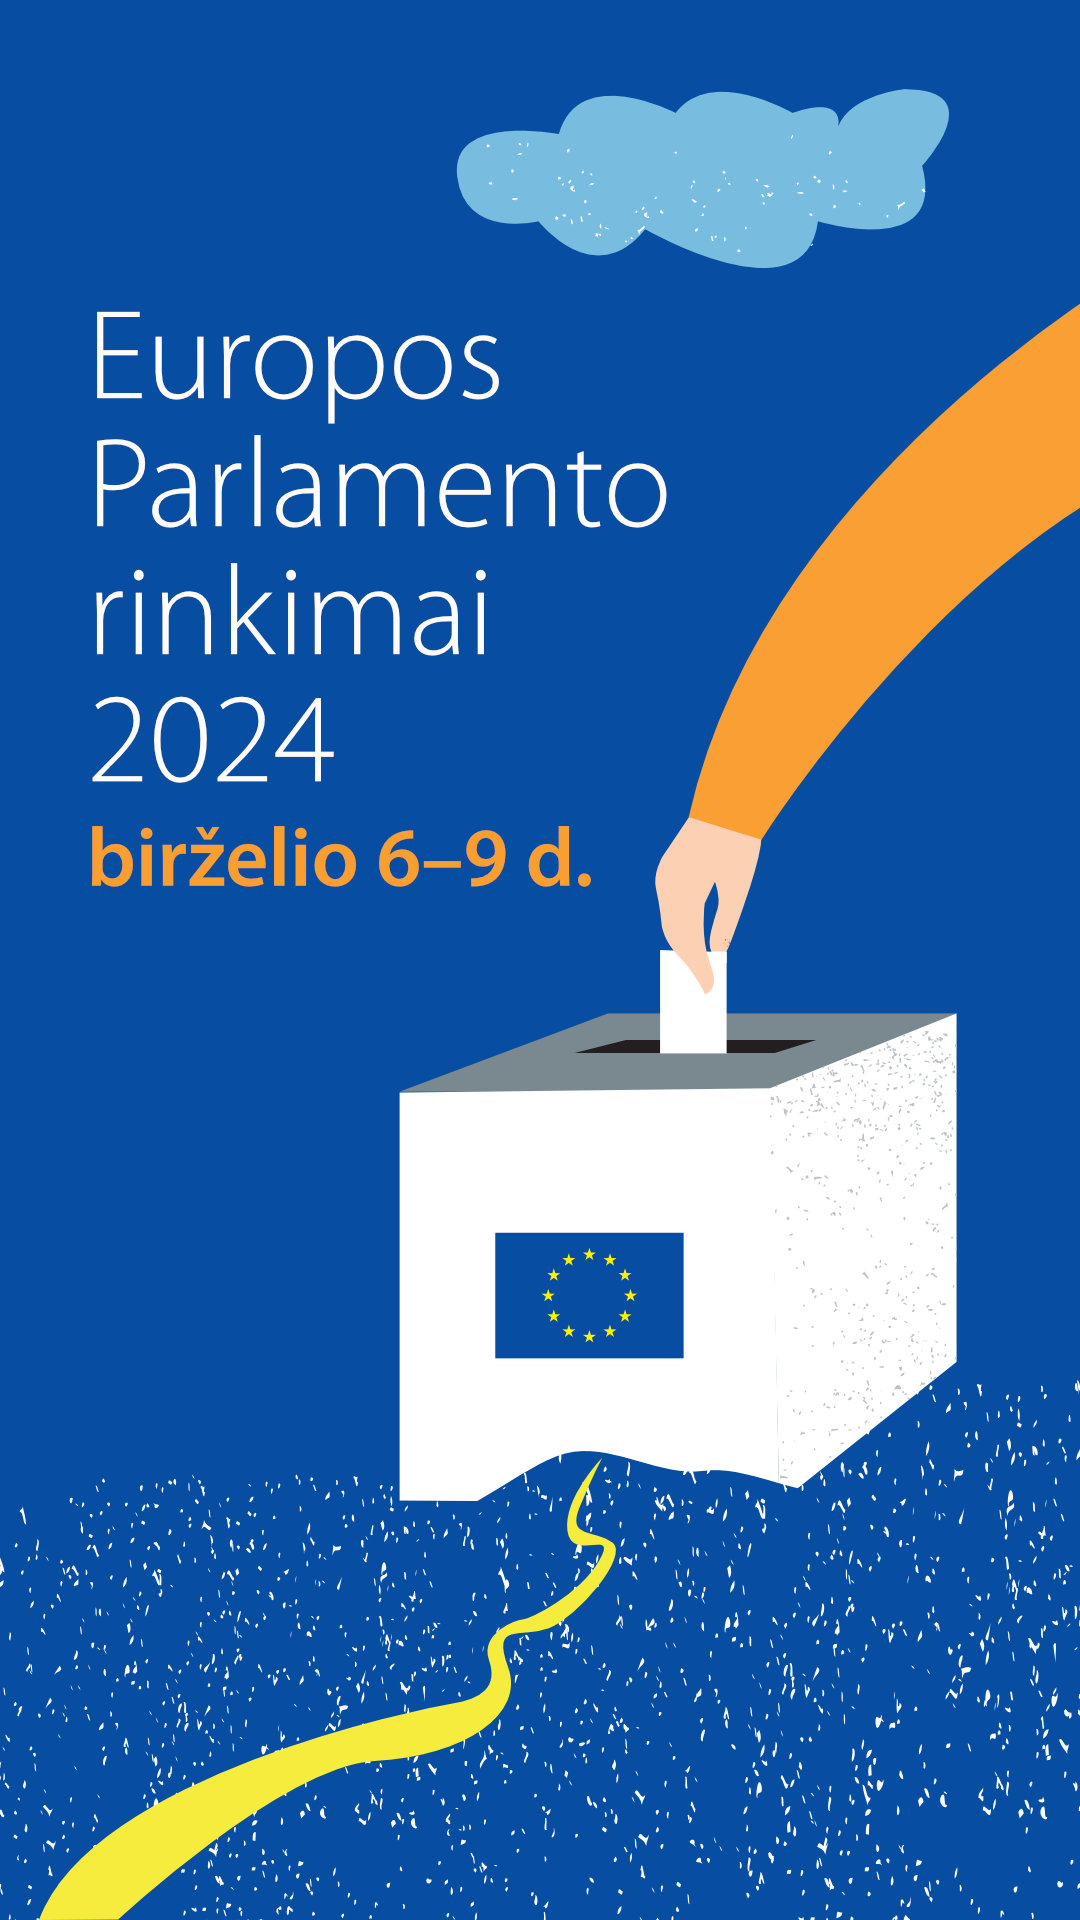 Europos Parlamento rinkimai 2024 - Story